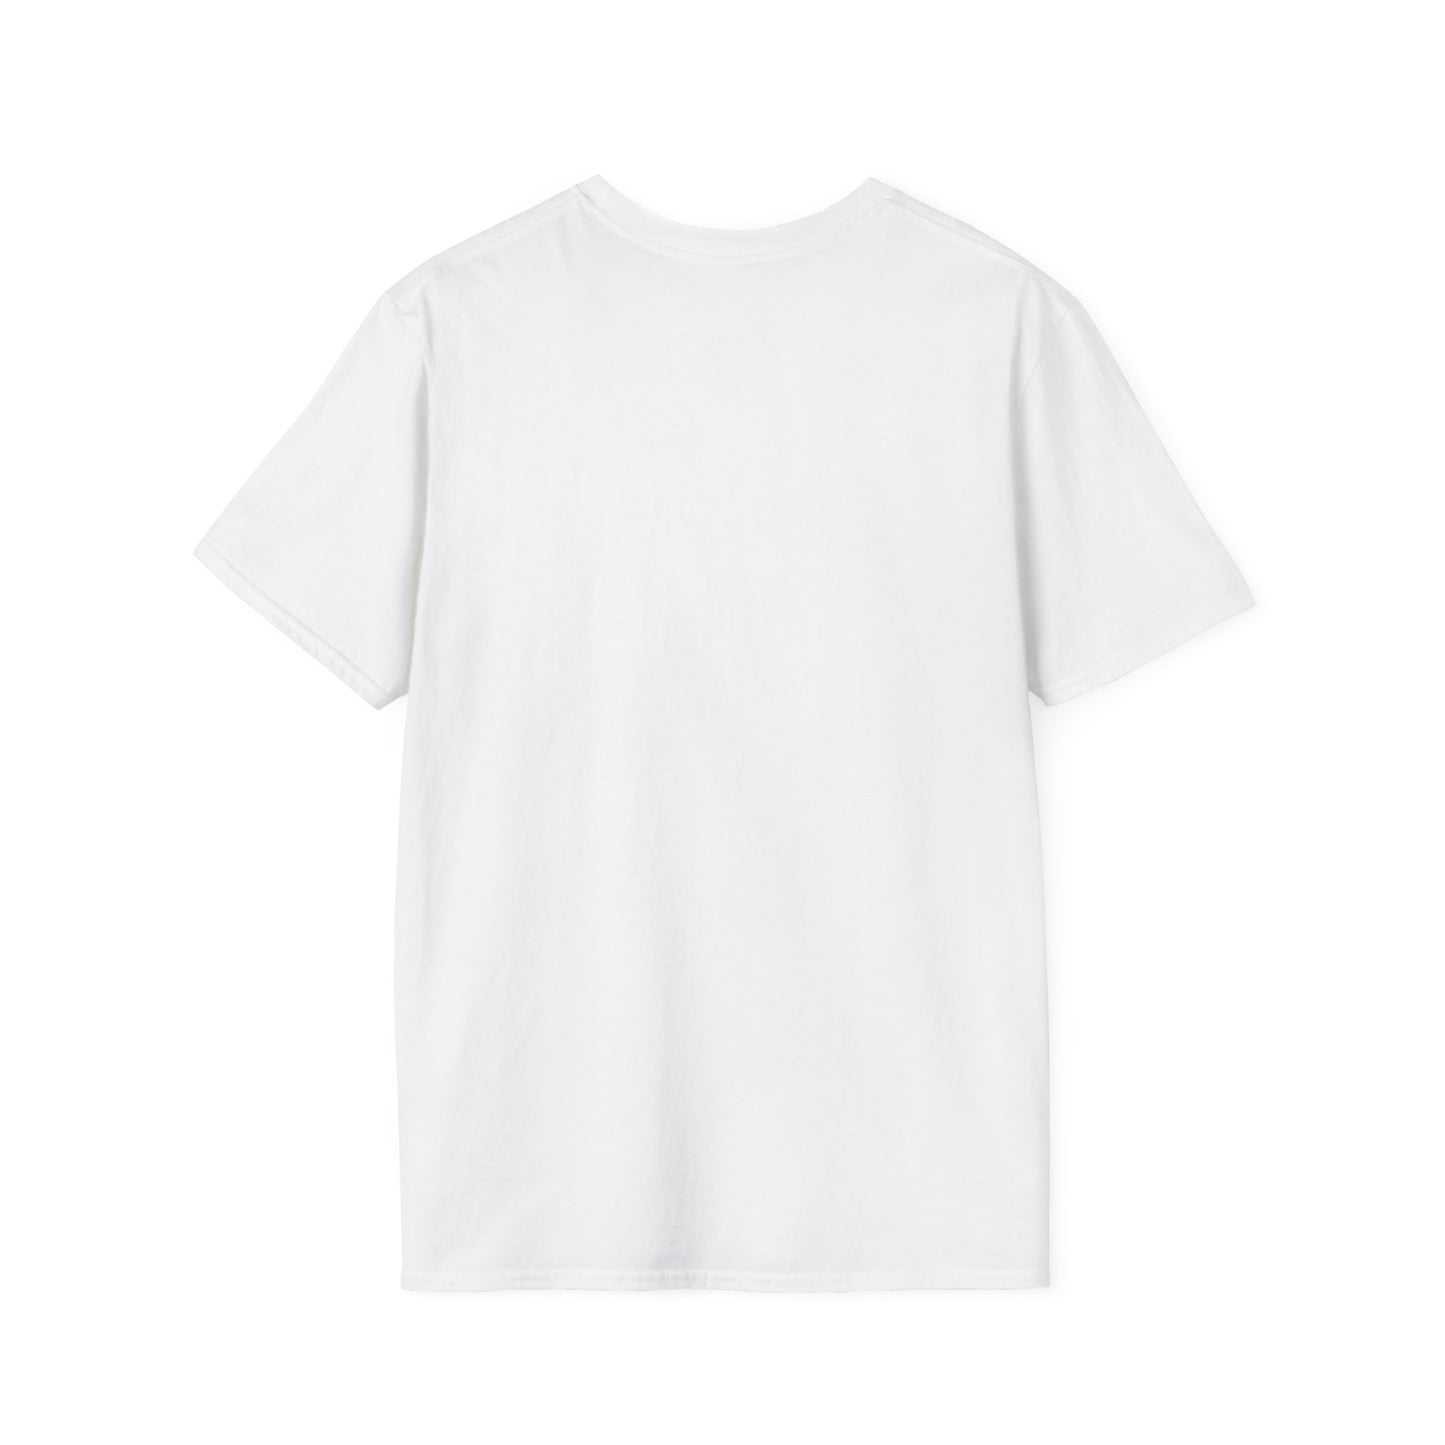 Hugger Unisex Softstyle T-Shirt